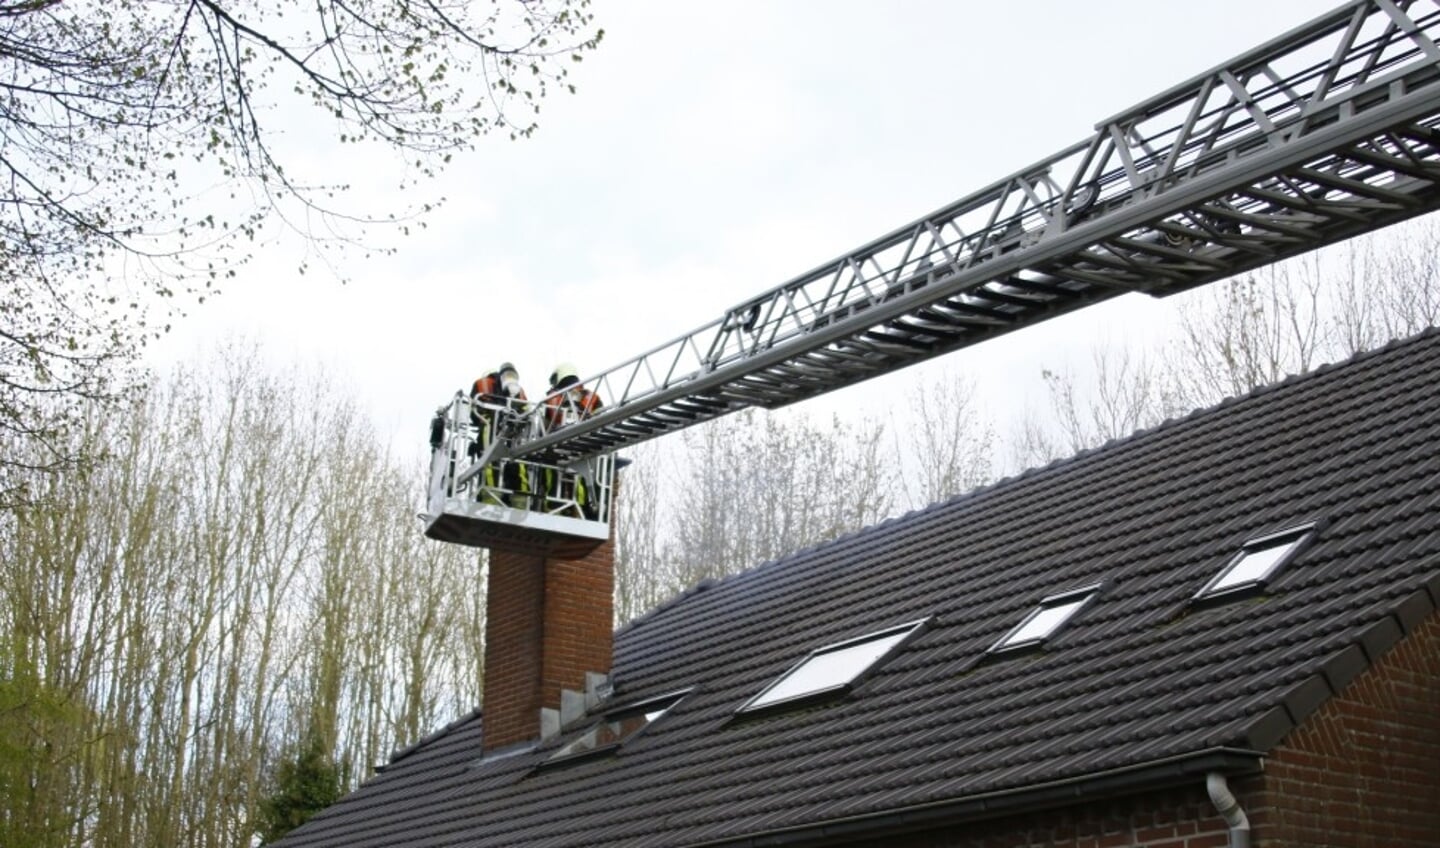 Fikse schoorsteenbrand zorgt voor inzet brandweer in Nistelrode